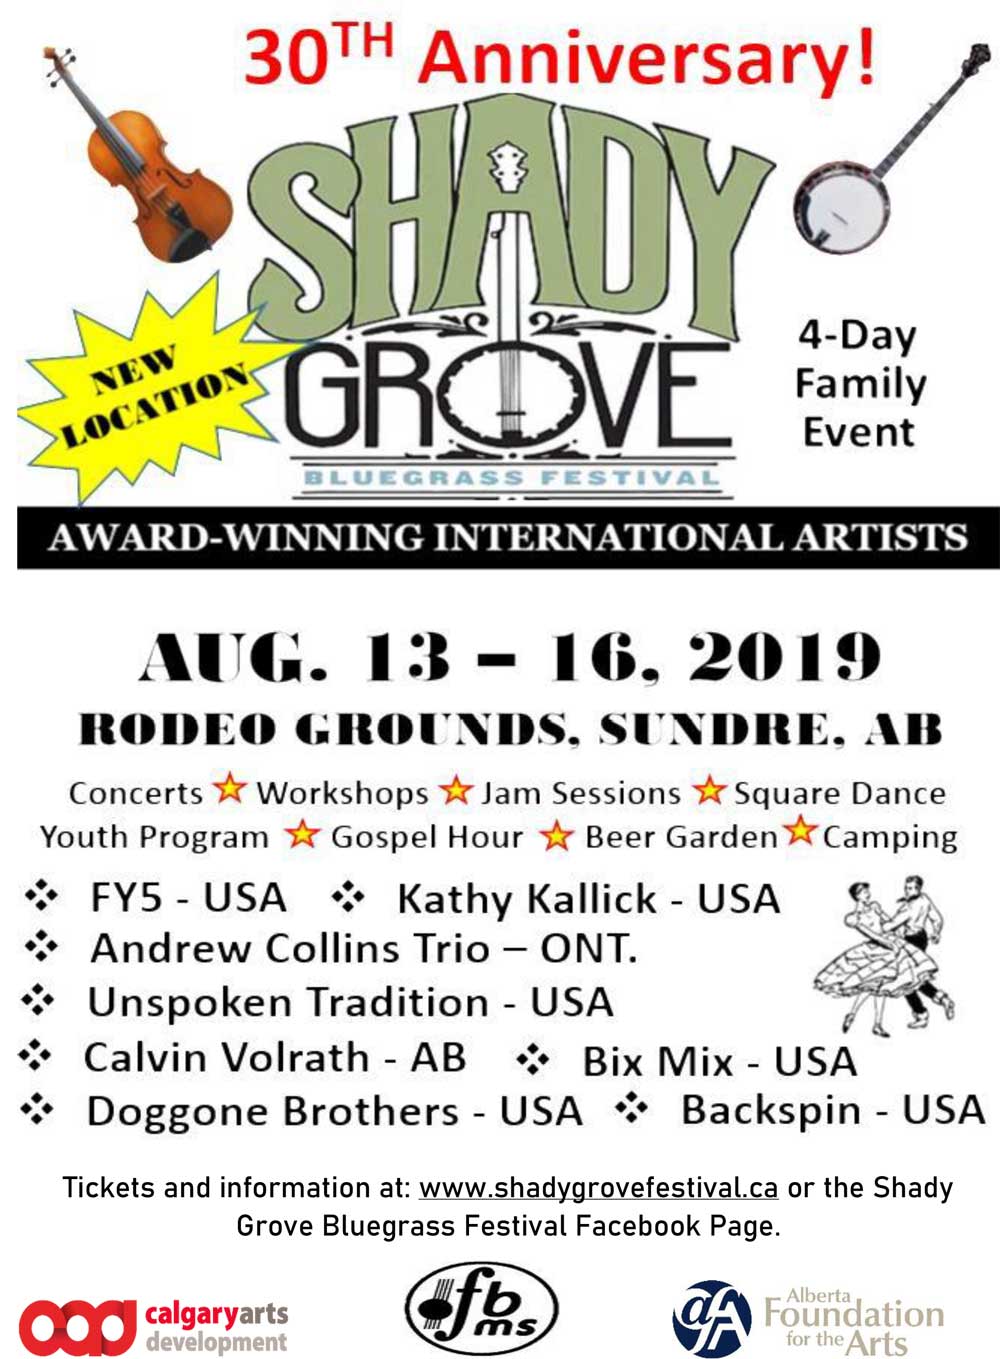 The Shady Grove Bluegrass Festival